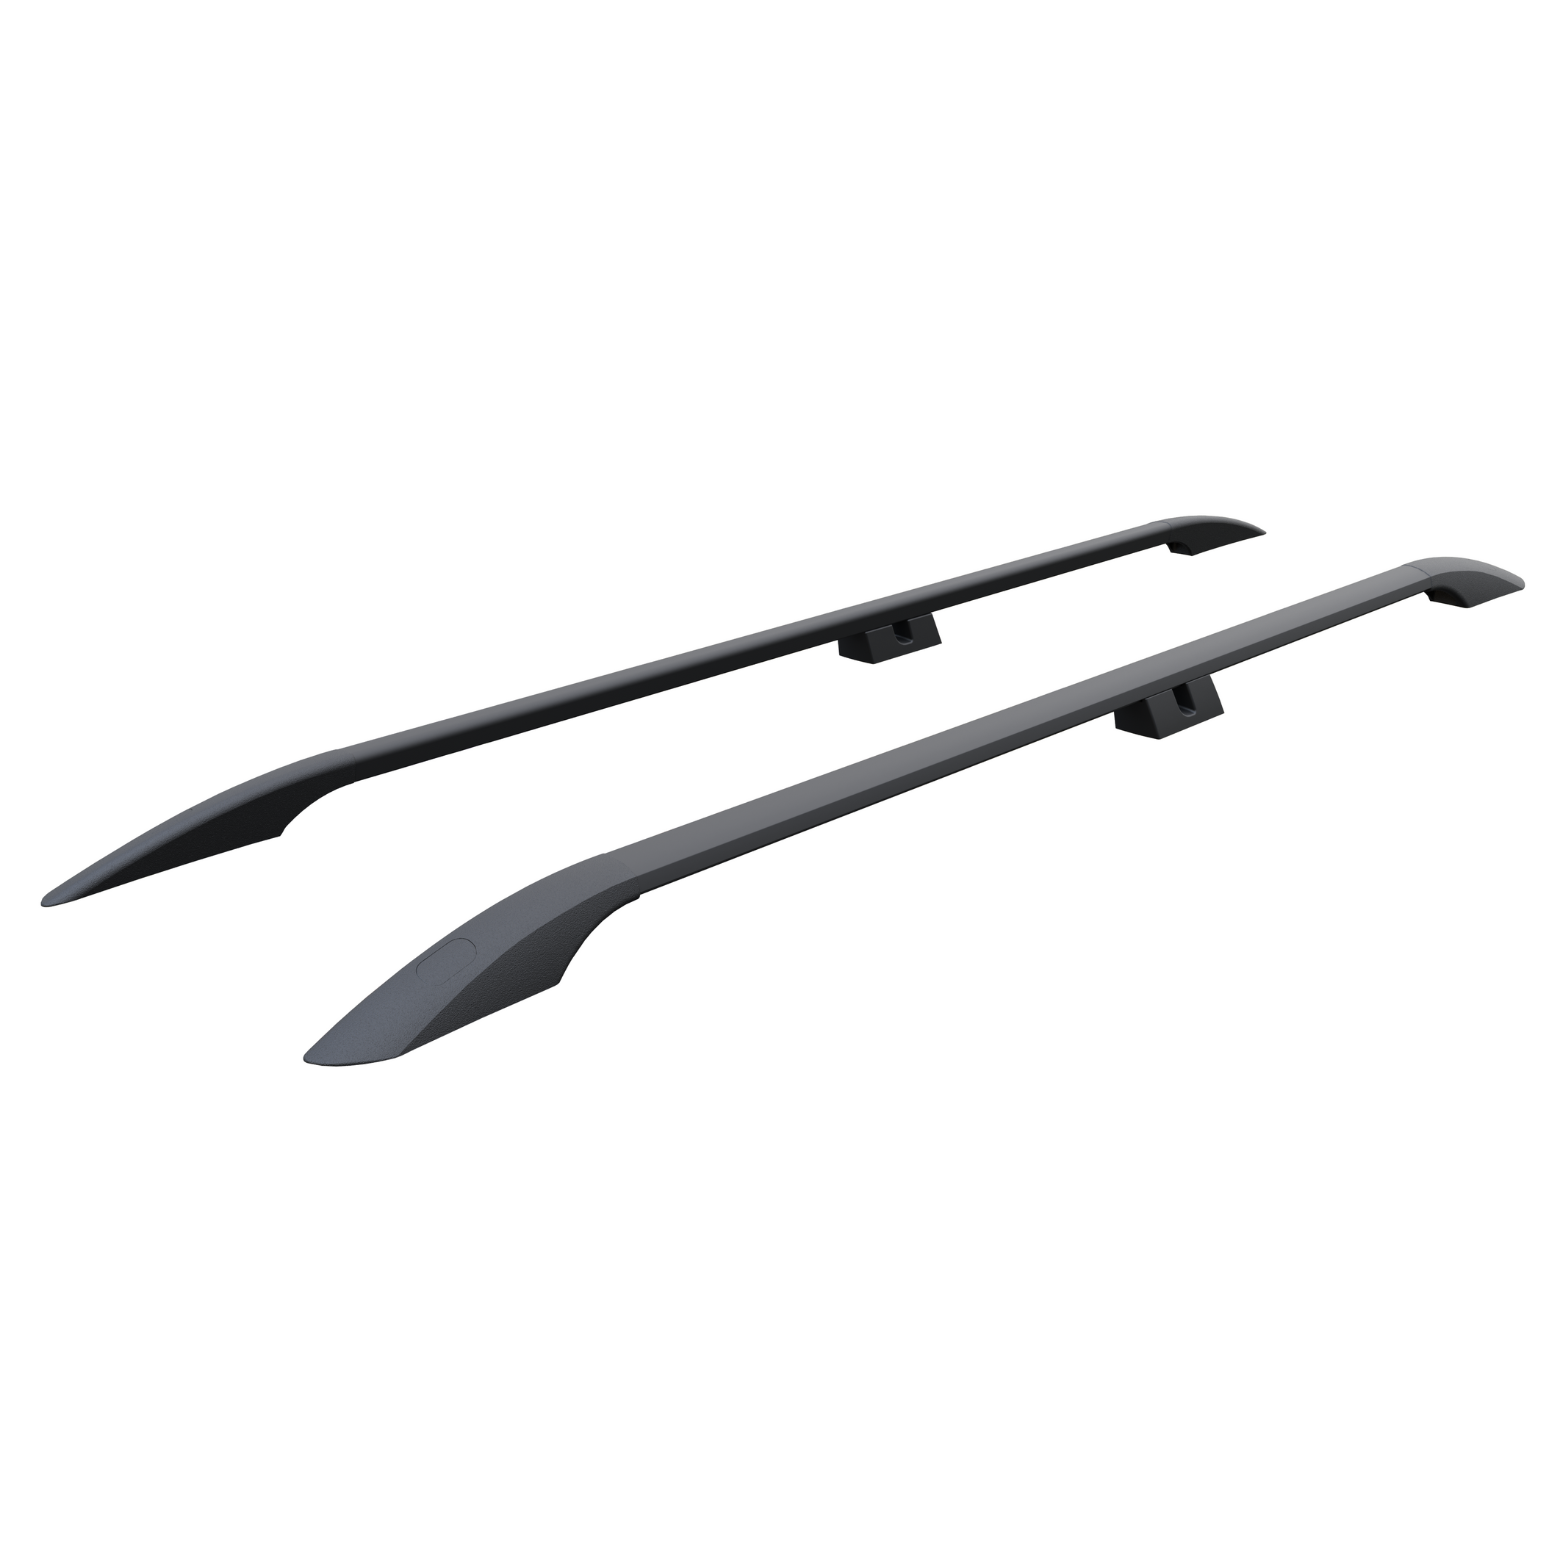 For Nissan NV400 2015-Up Roof Side Rails Ultimate Style Alu Black